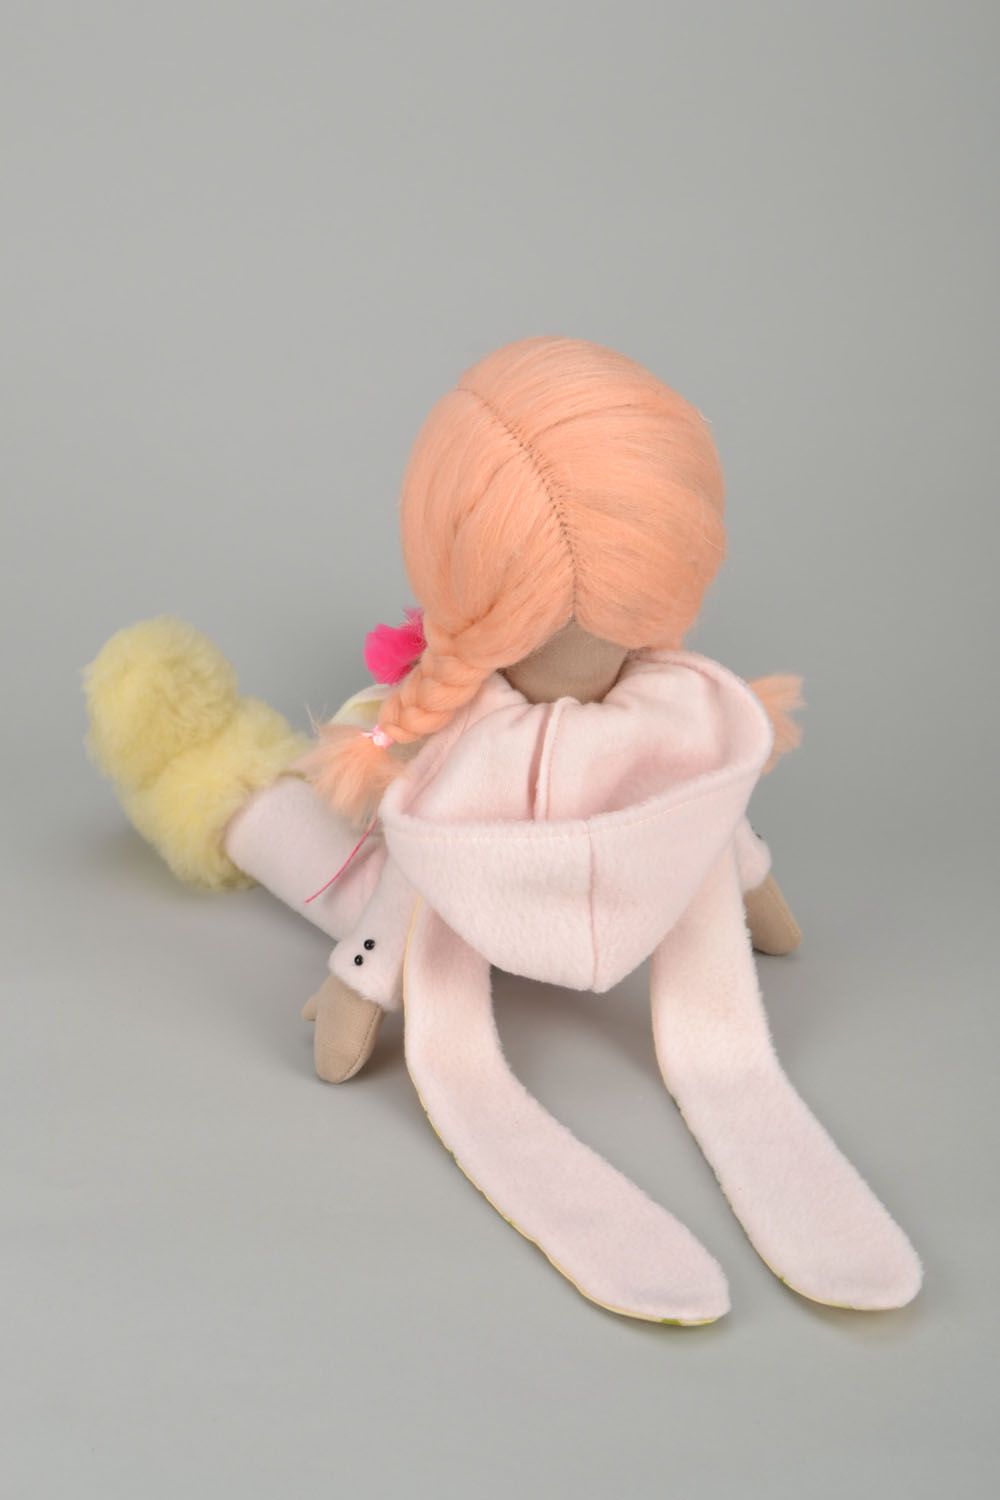 Designer doll with braids photo 5